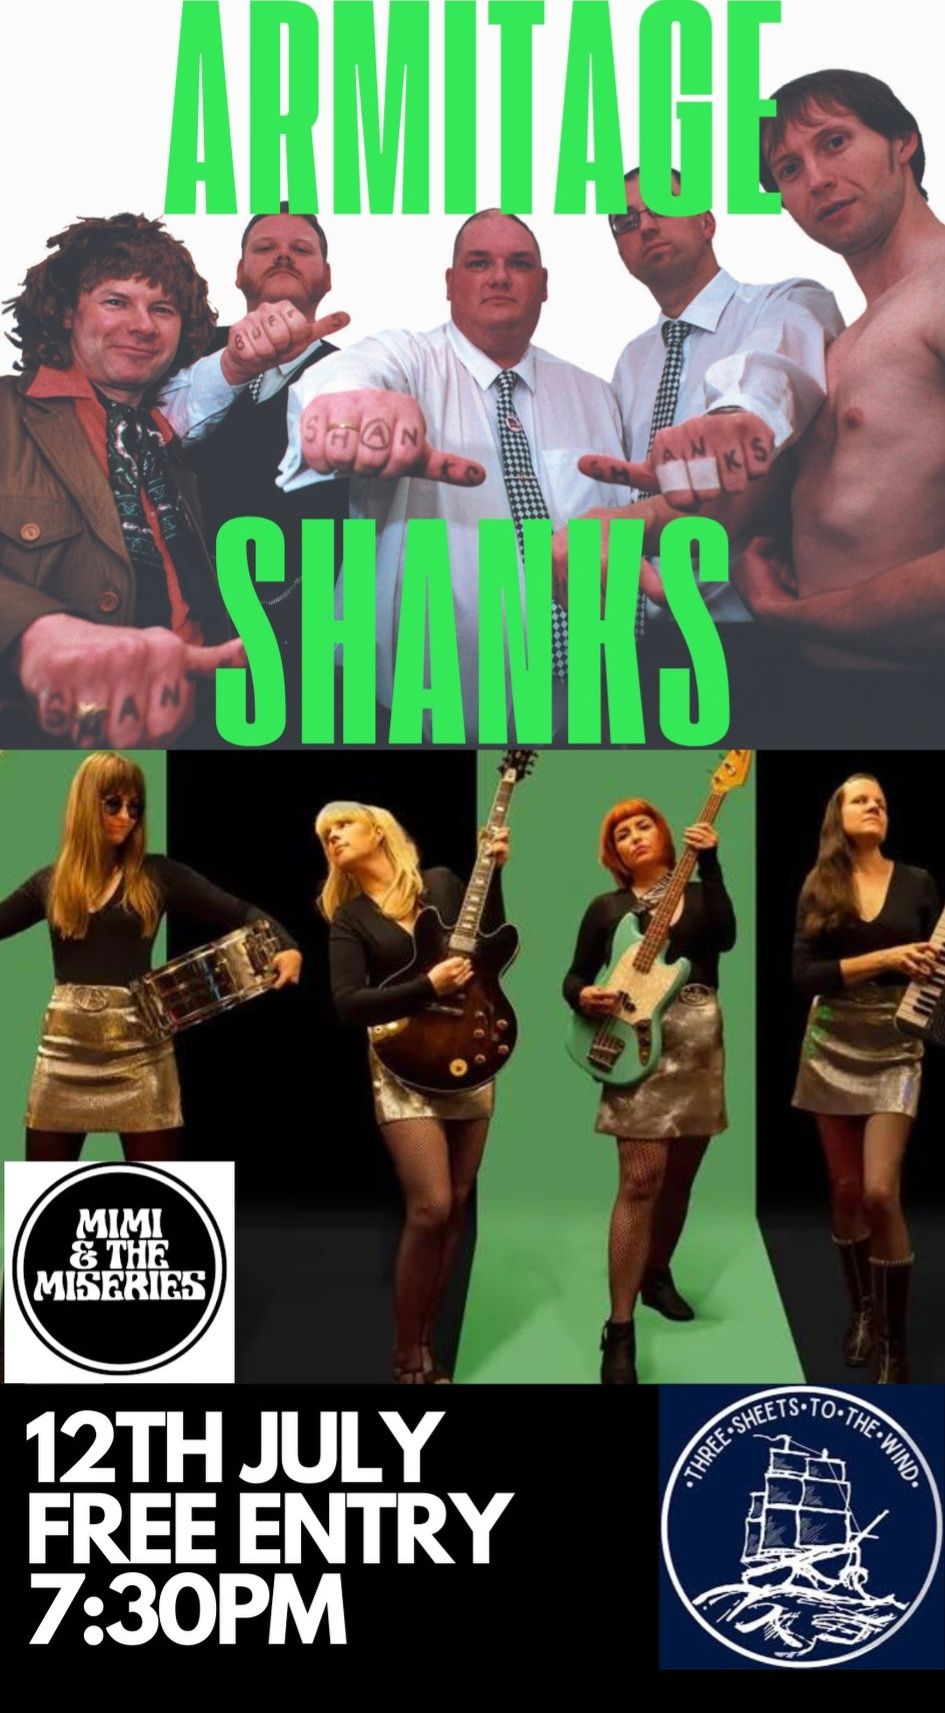 Armitage Shanks + Mimi & The Miseries